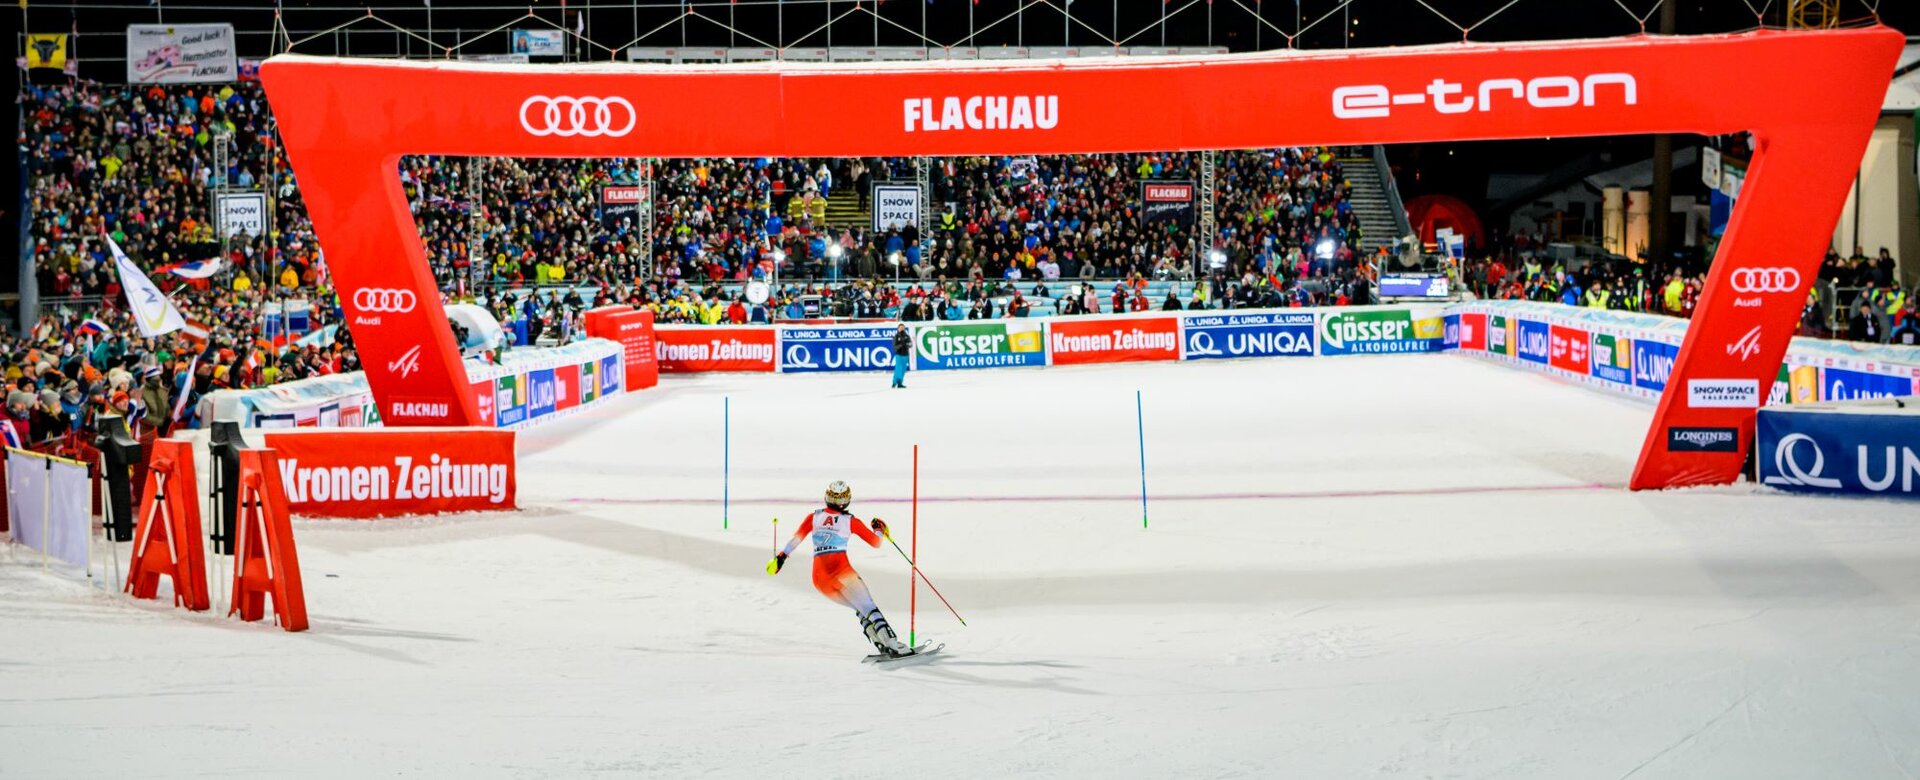 Rennläuferin fährt in Richtung Ziel und wird von der Publikumsmenge angefeuert. | © Snow Space Salzburg 